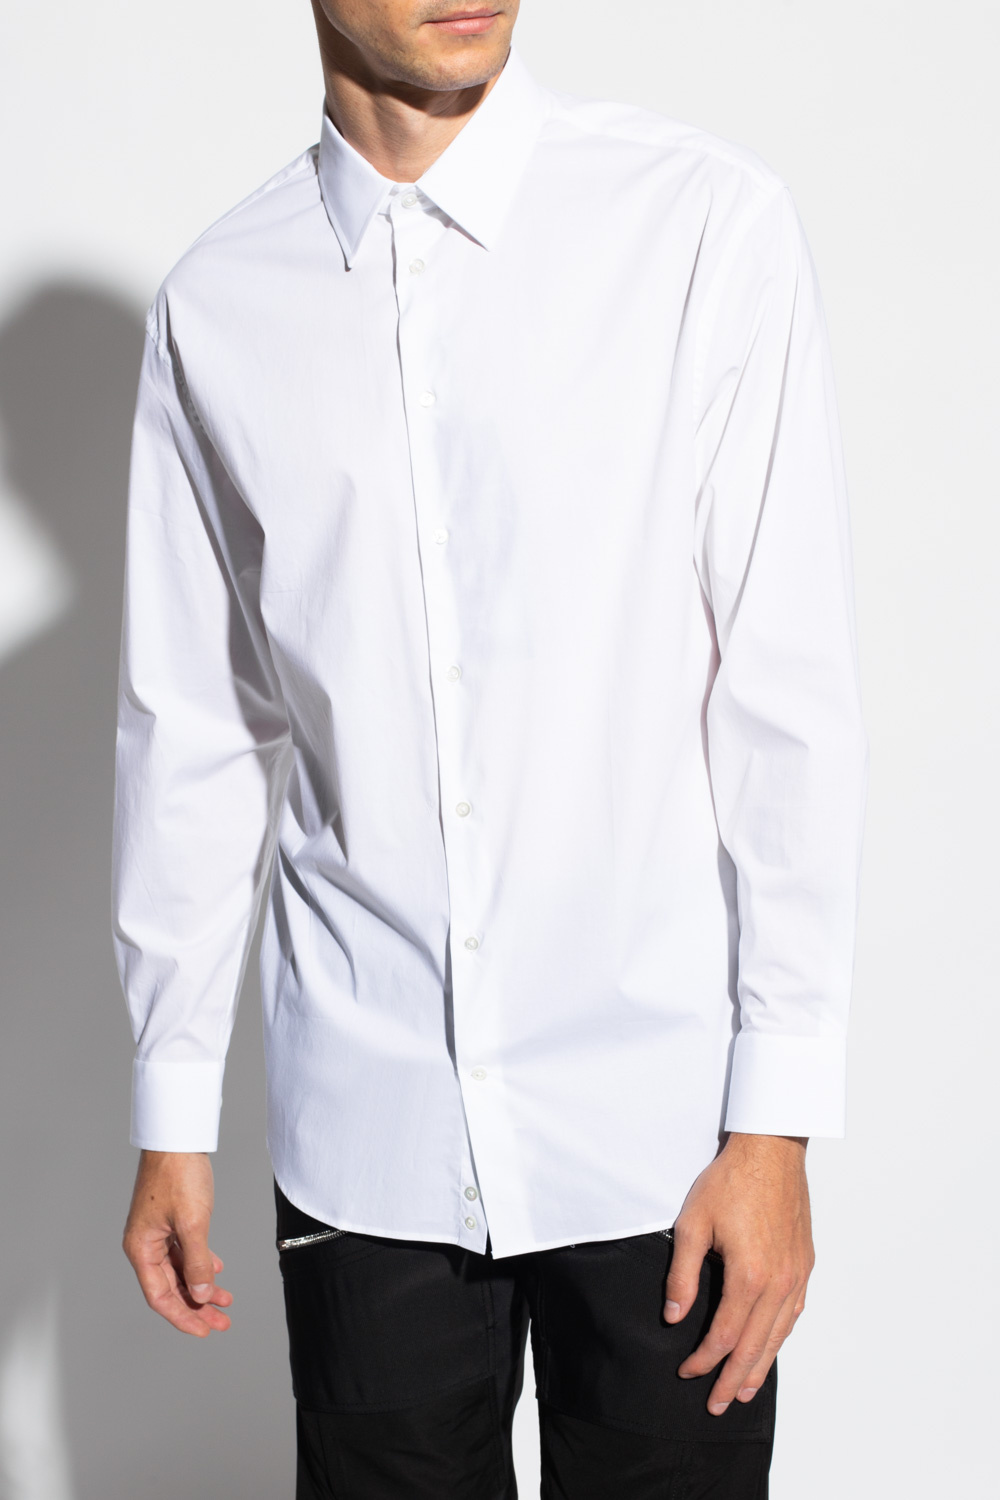 Emporio armani waist Cotton shirt